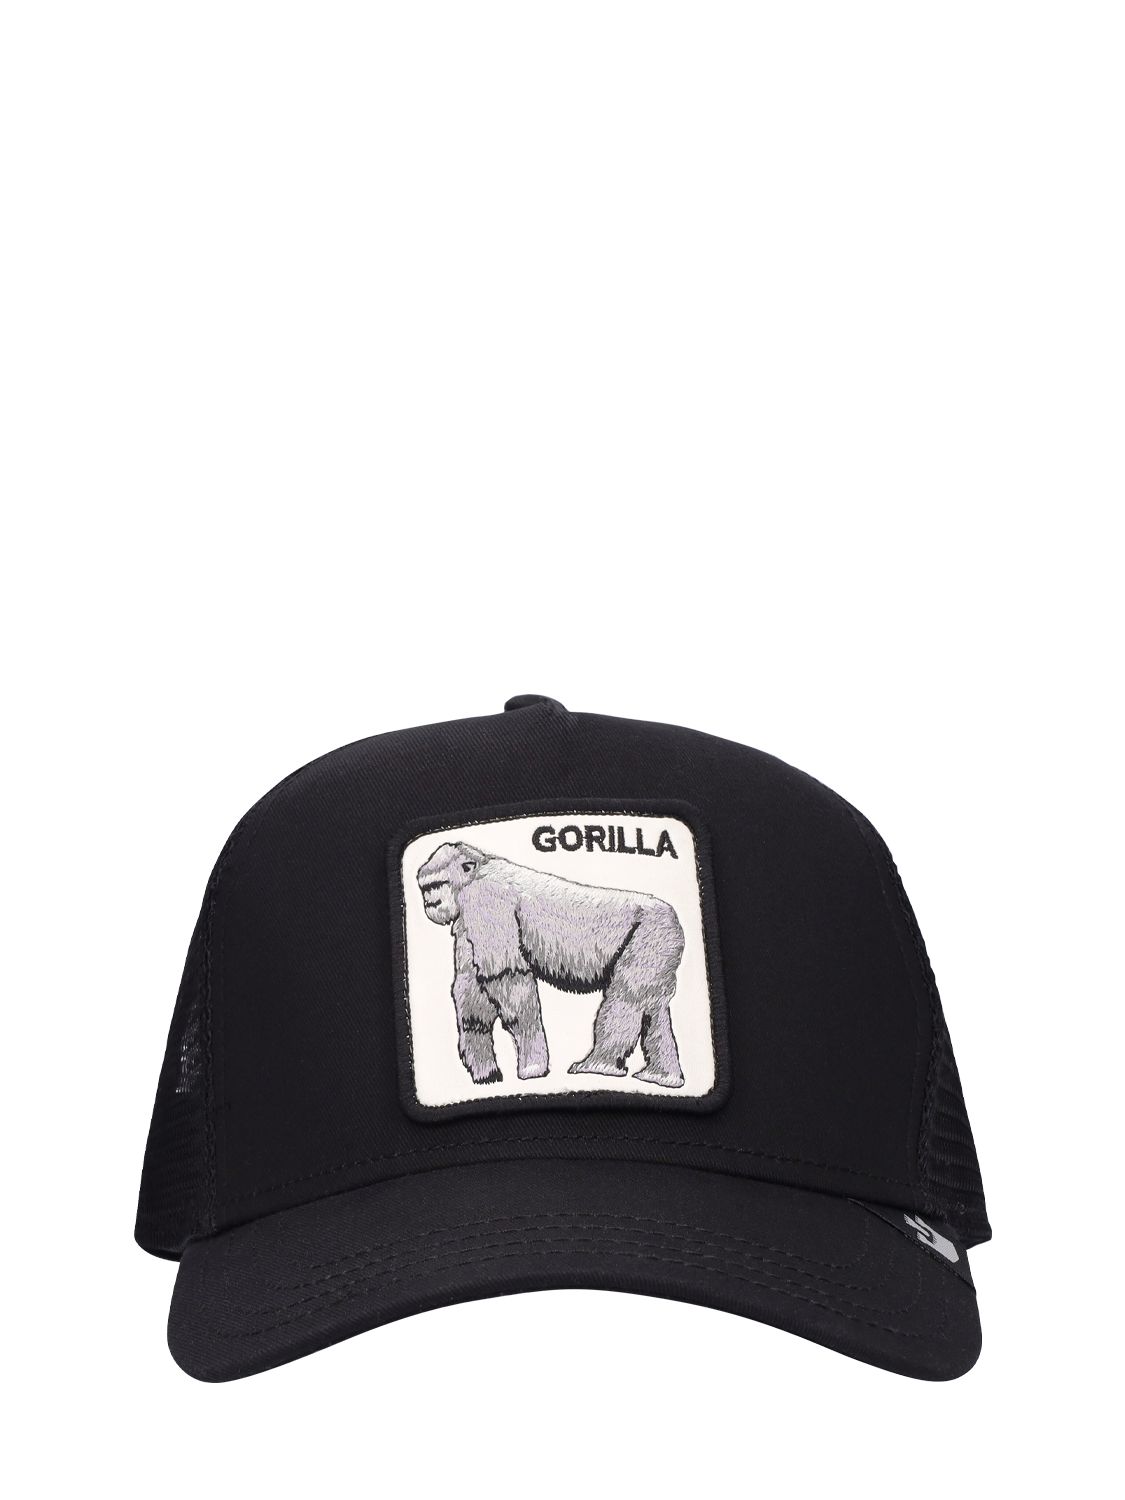 The Gorilla Trucker Hat W/patch